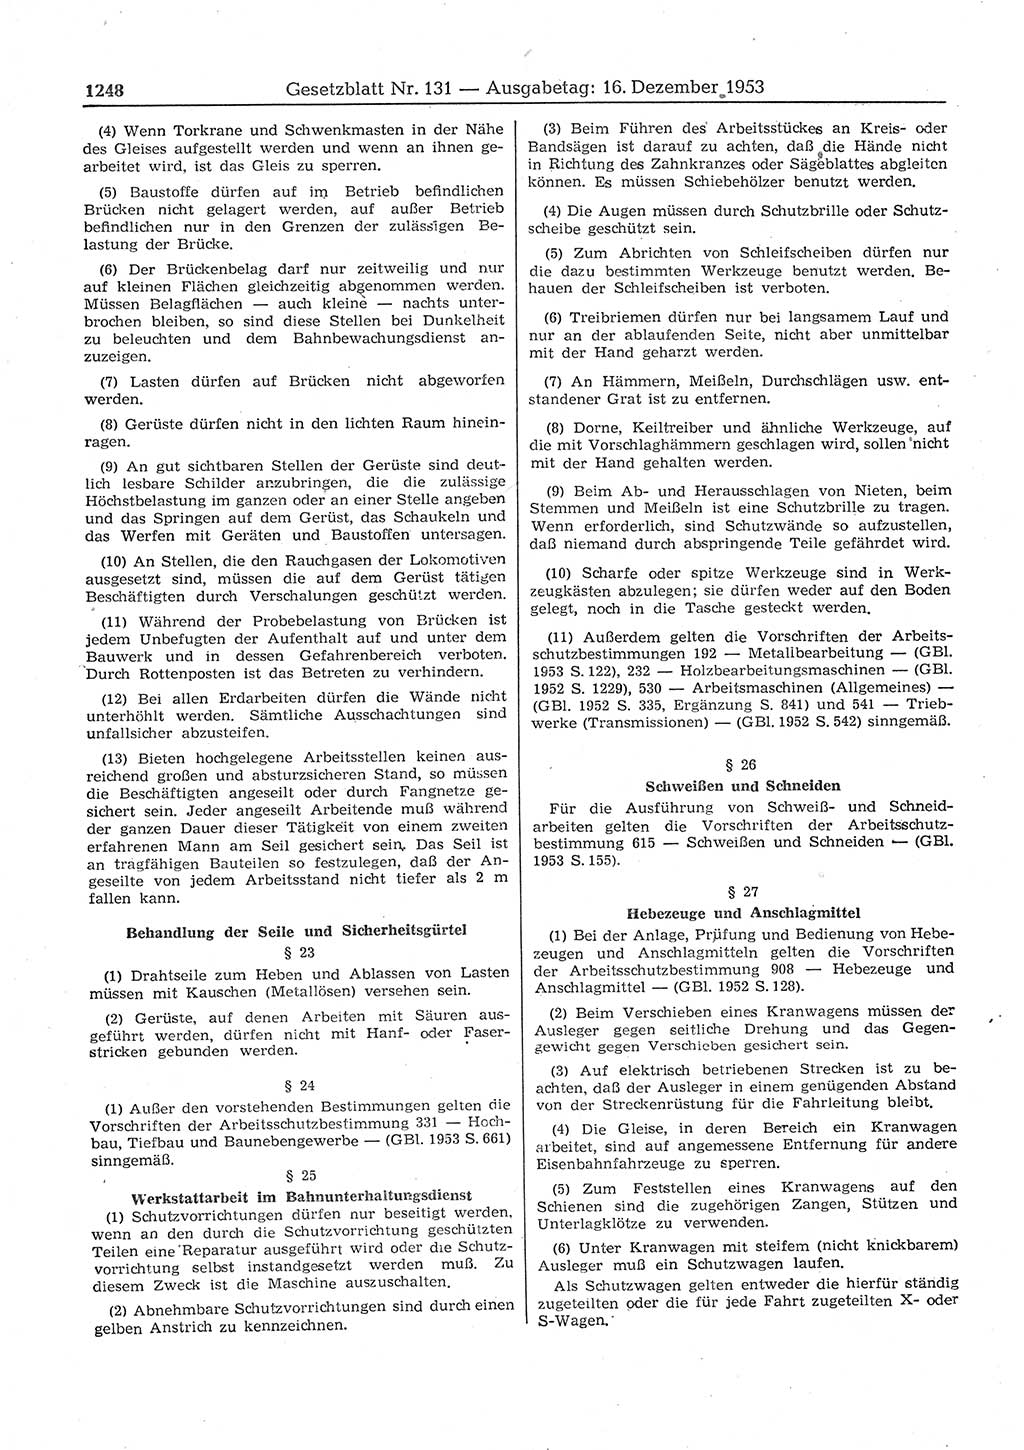 Gesetzblatt (GBl.) der Deutschen Demokratischen Republik (DDR) 1953, Seite 1248 (GBl. DDR 1953, S. 1248)